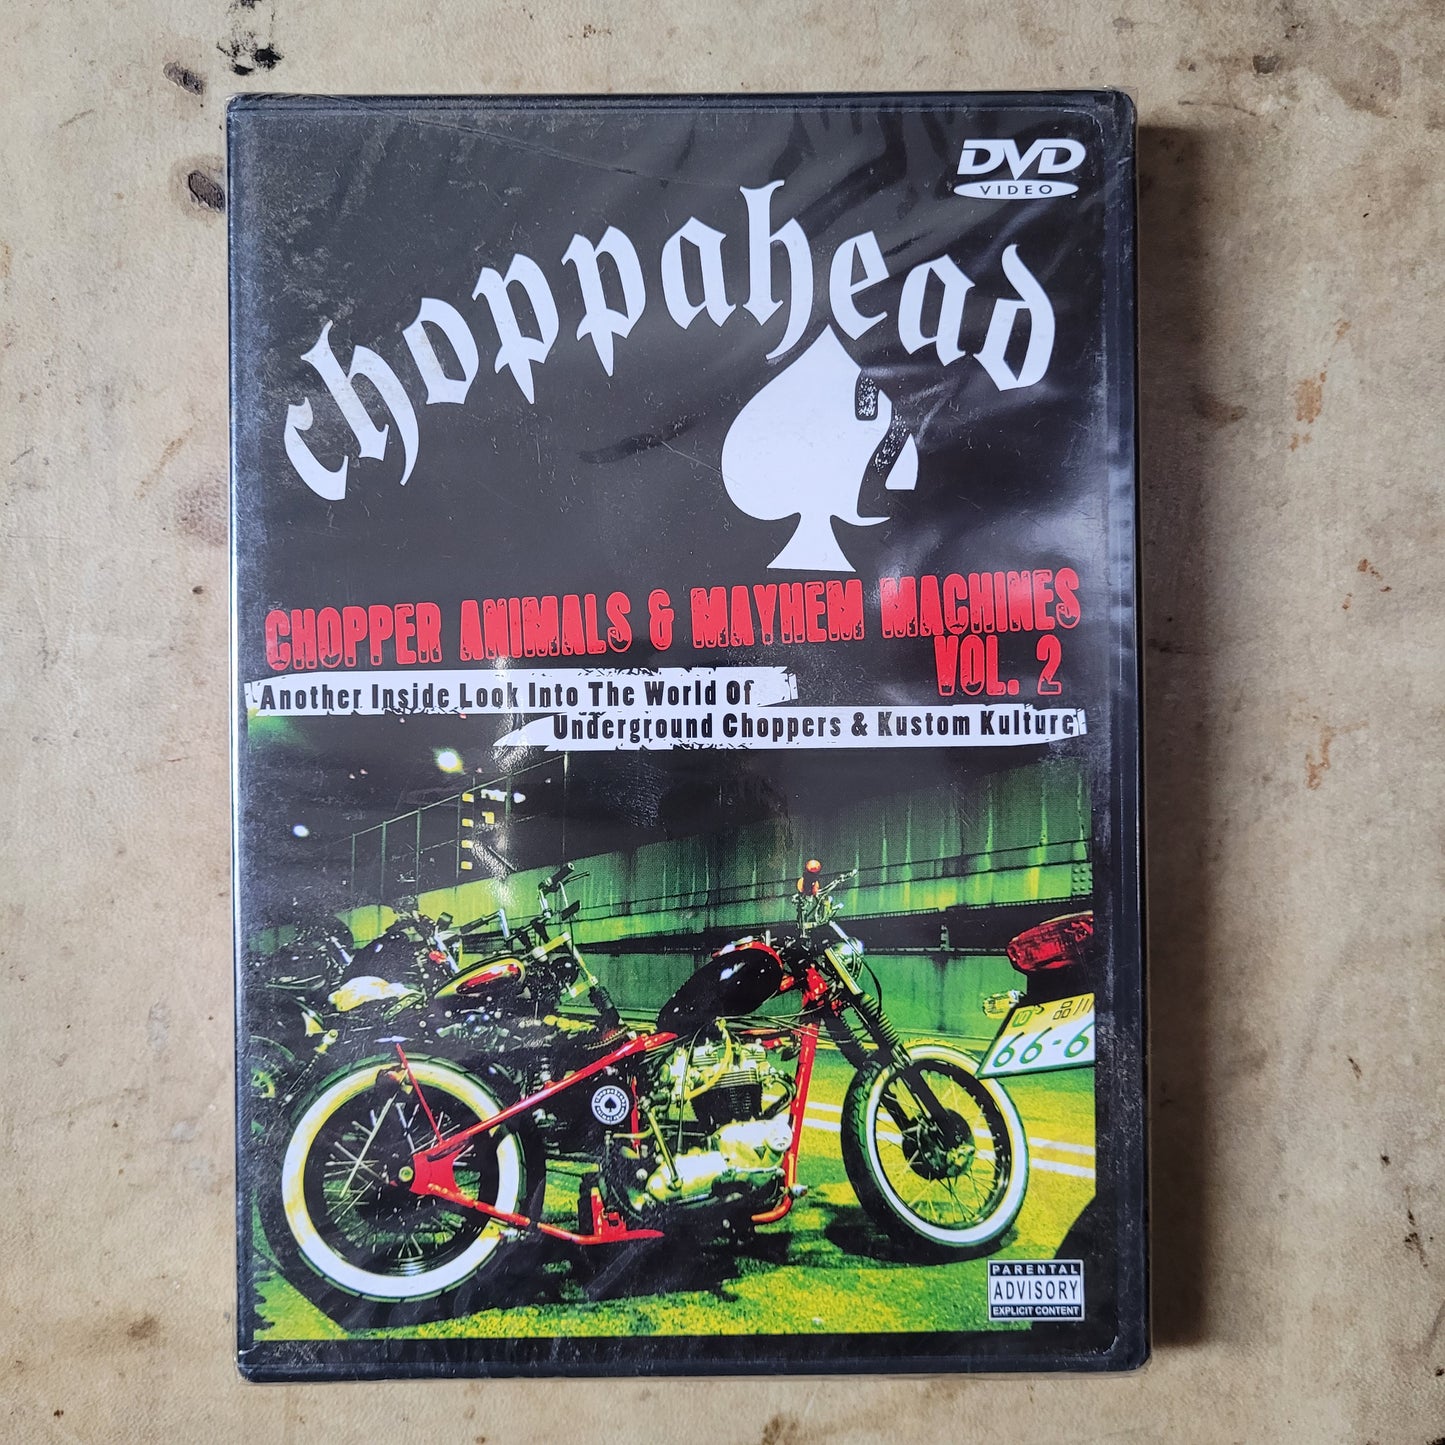 DVD CHOPPAHEAD VOL. 2